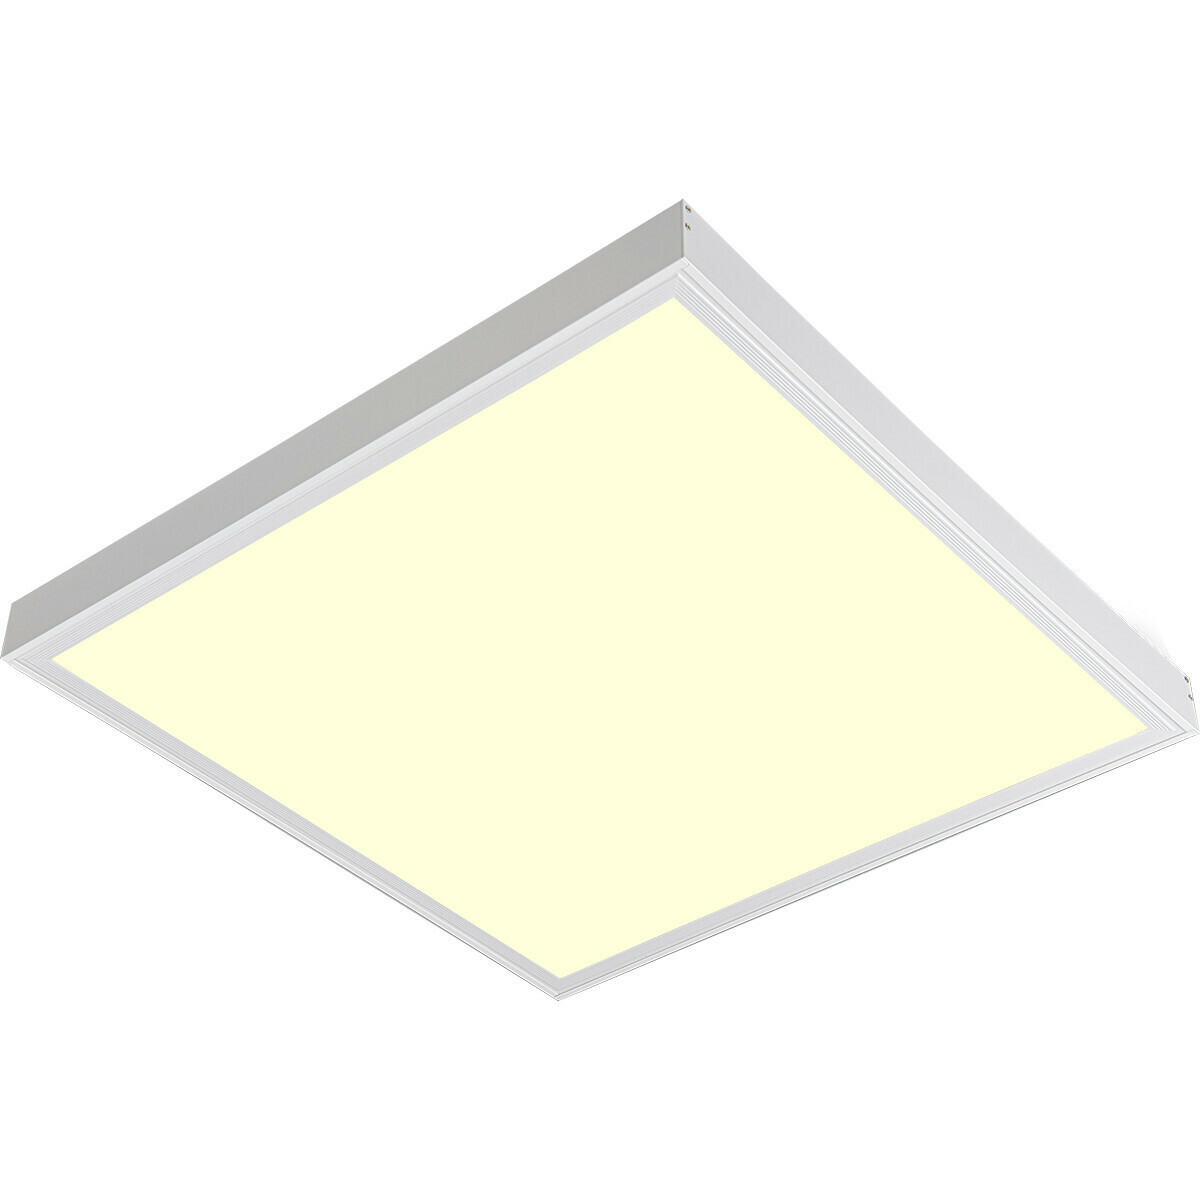 LED Paneel met Stekker - Aigi Leny - 60x60 - Warm Wit 3000K - 32W - 3840lm - 120lm/W - High Lumen - Opbouw - Vierkant - Mat Wit - Flikkervrij product afbeelding